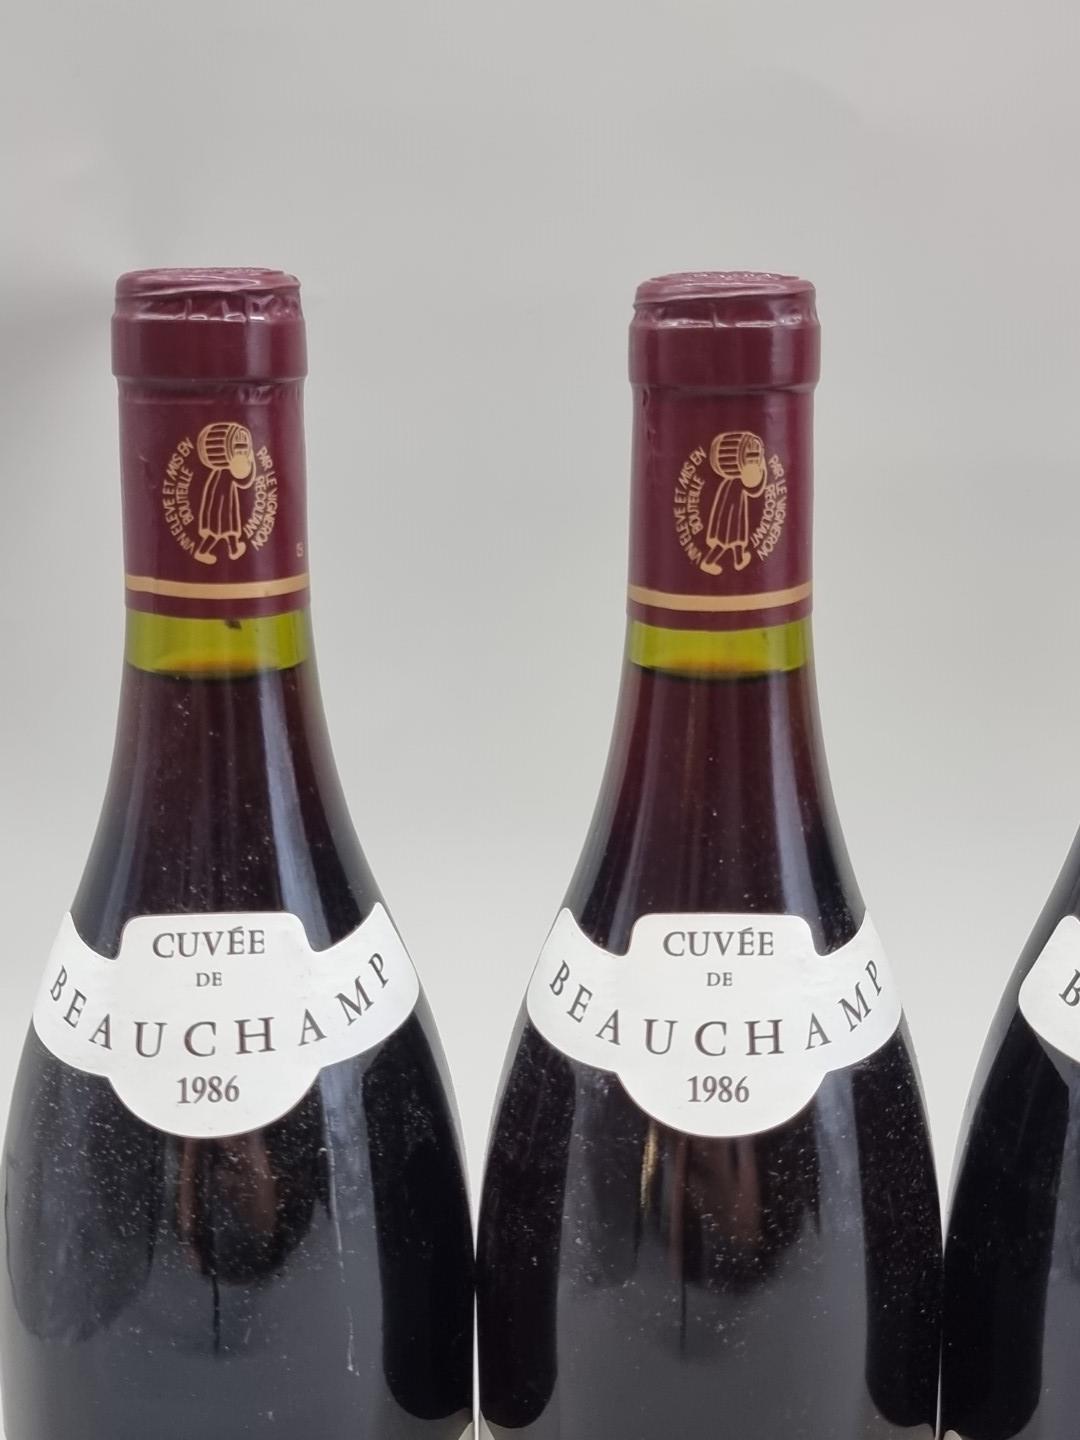 Six 75cl bottles of Gigondas Cuvee Beauchamps, 1986, Chateau de Montmirail. (6) - Bild 2 aus 4